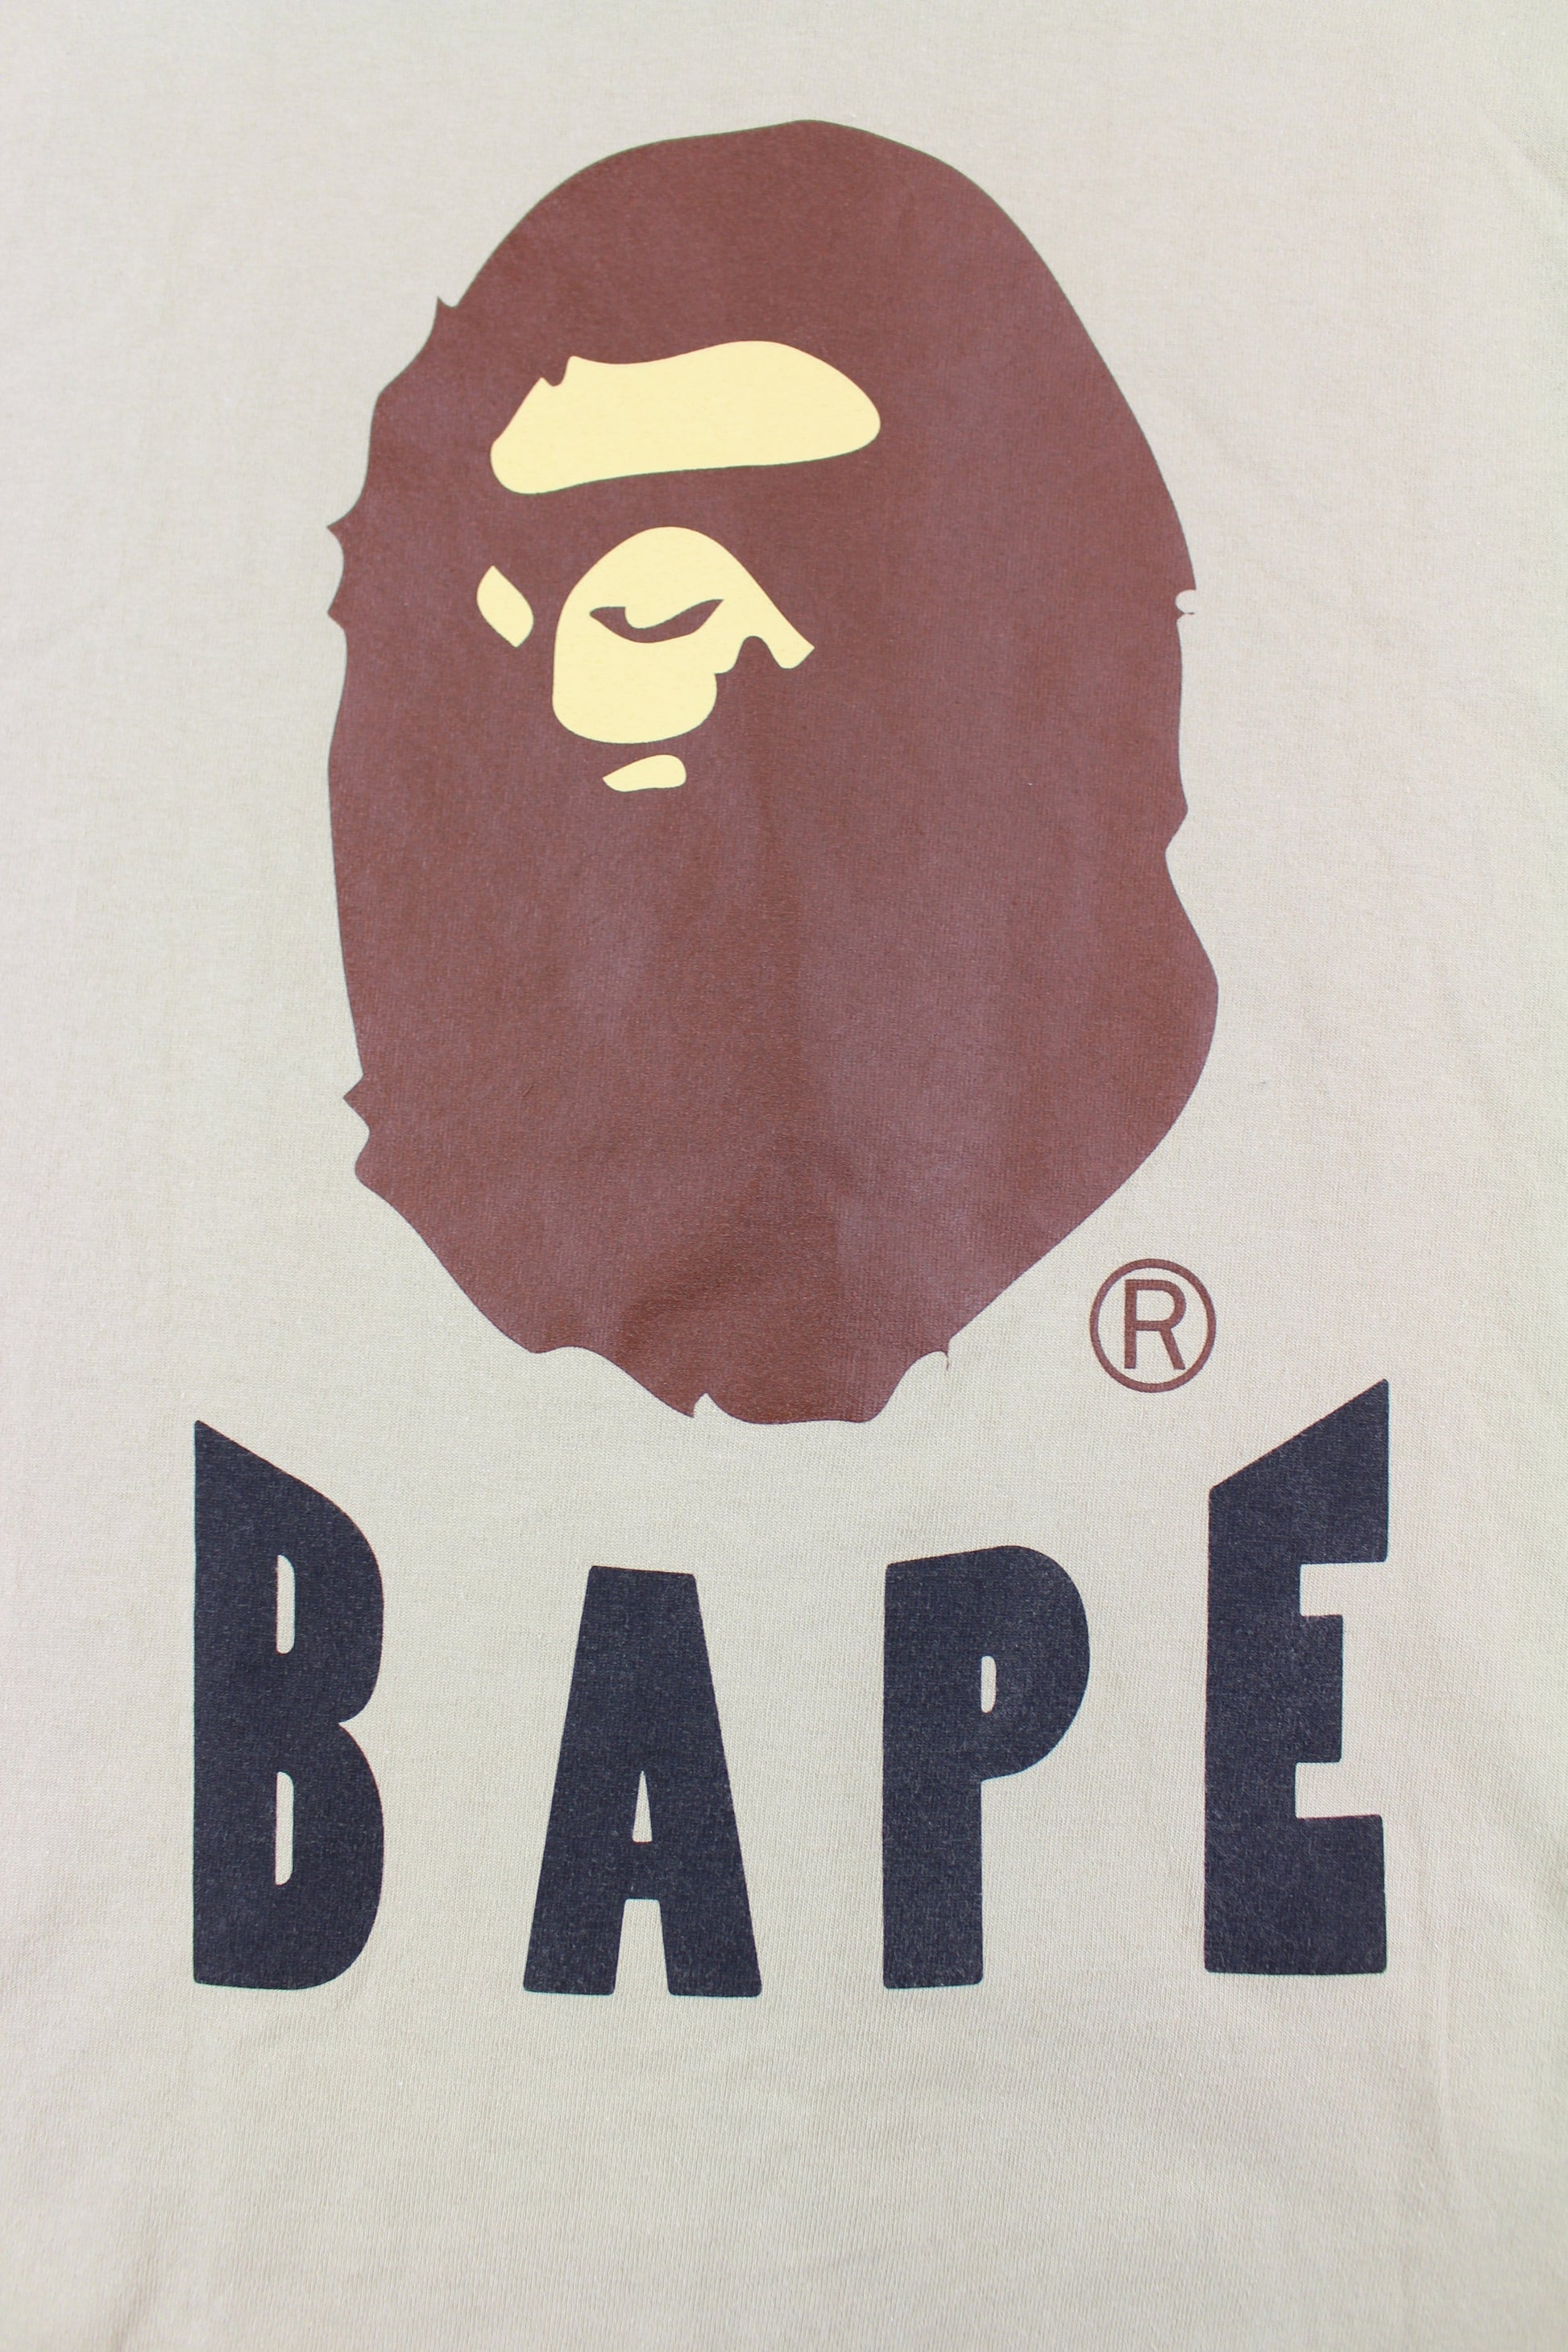 Bape Big Ape Logo Text Tee Tan - SaruGeneral